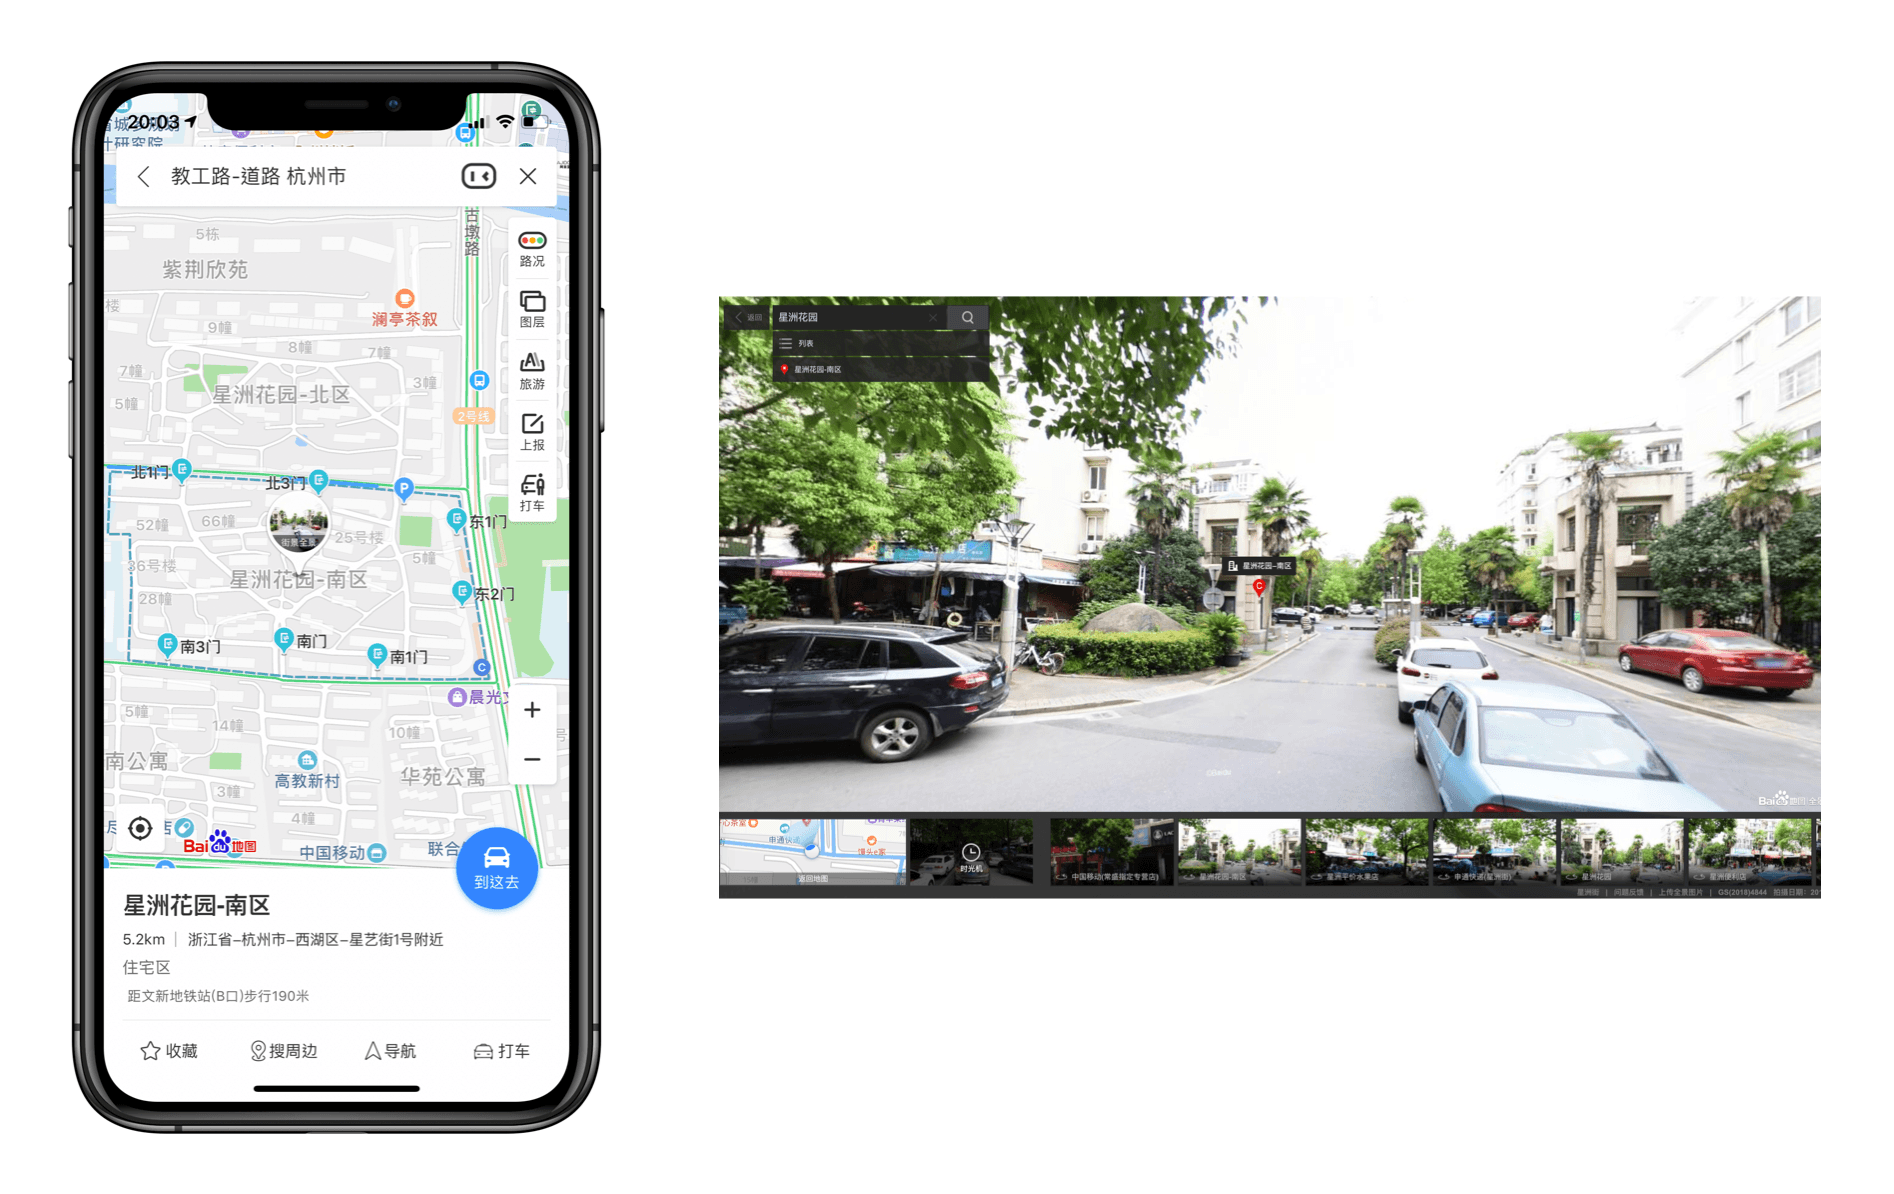 百度地图街景支持手机 App 和 Web 两种模式